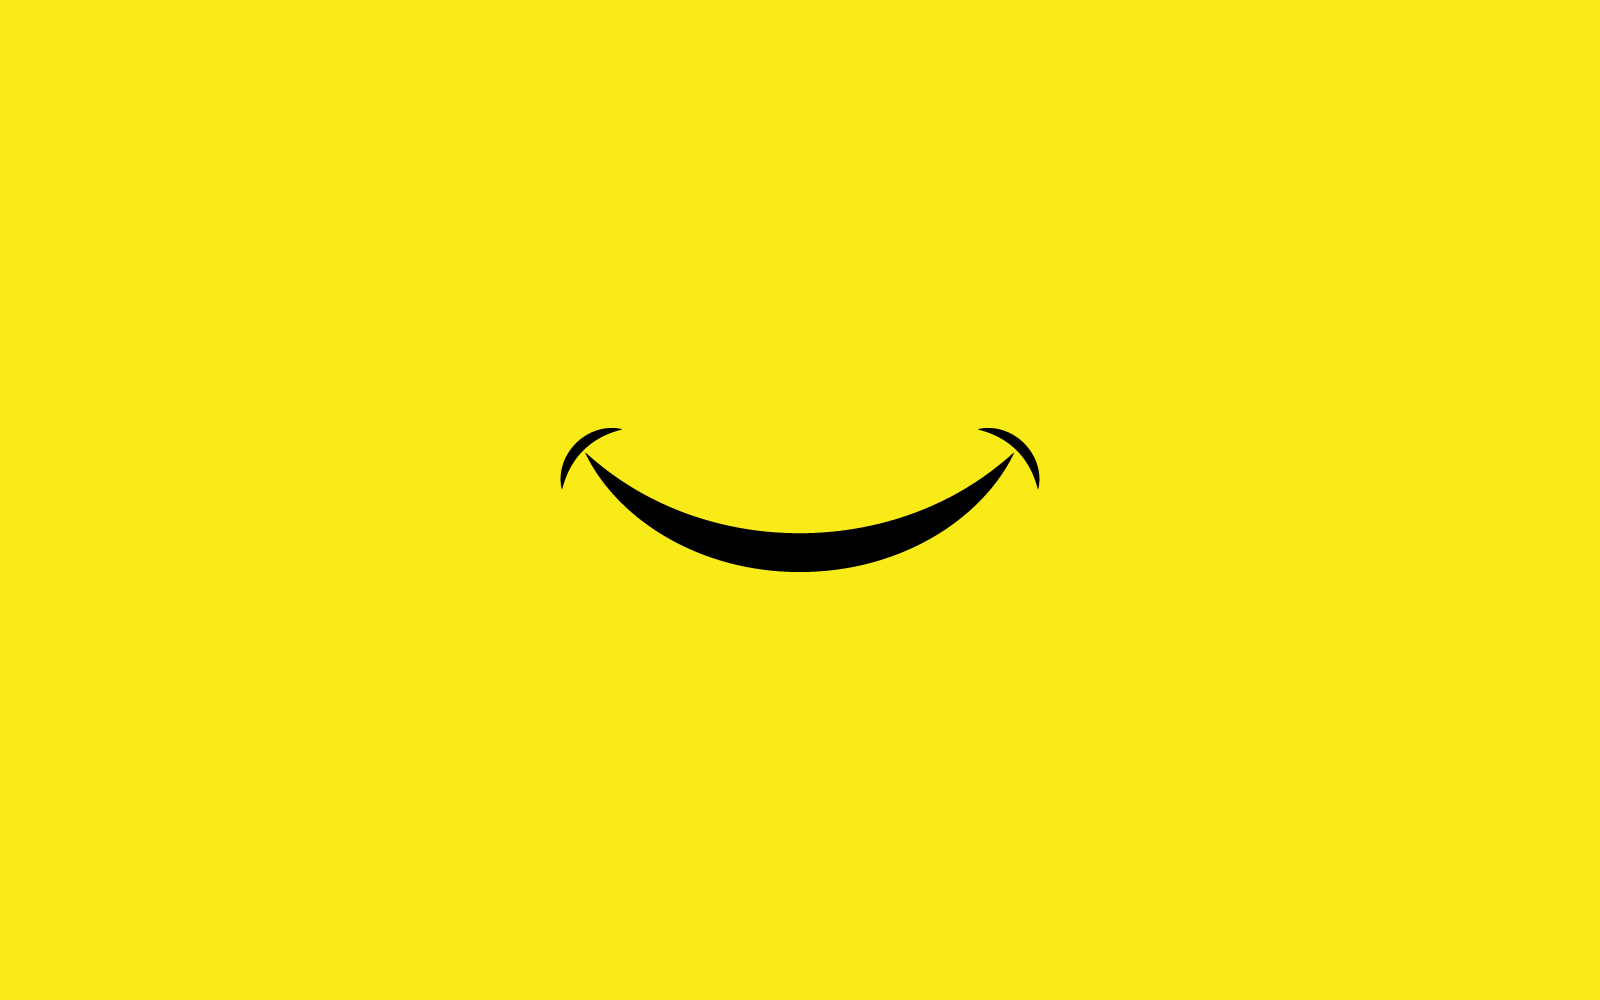 Smile happy face illustration icon vector design